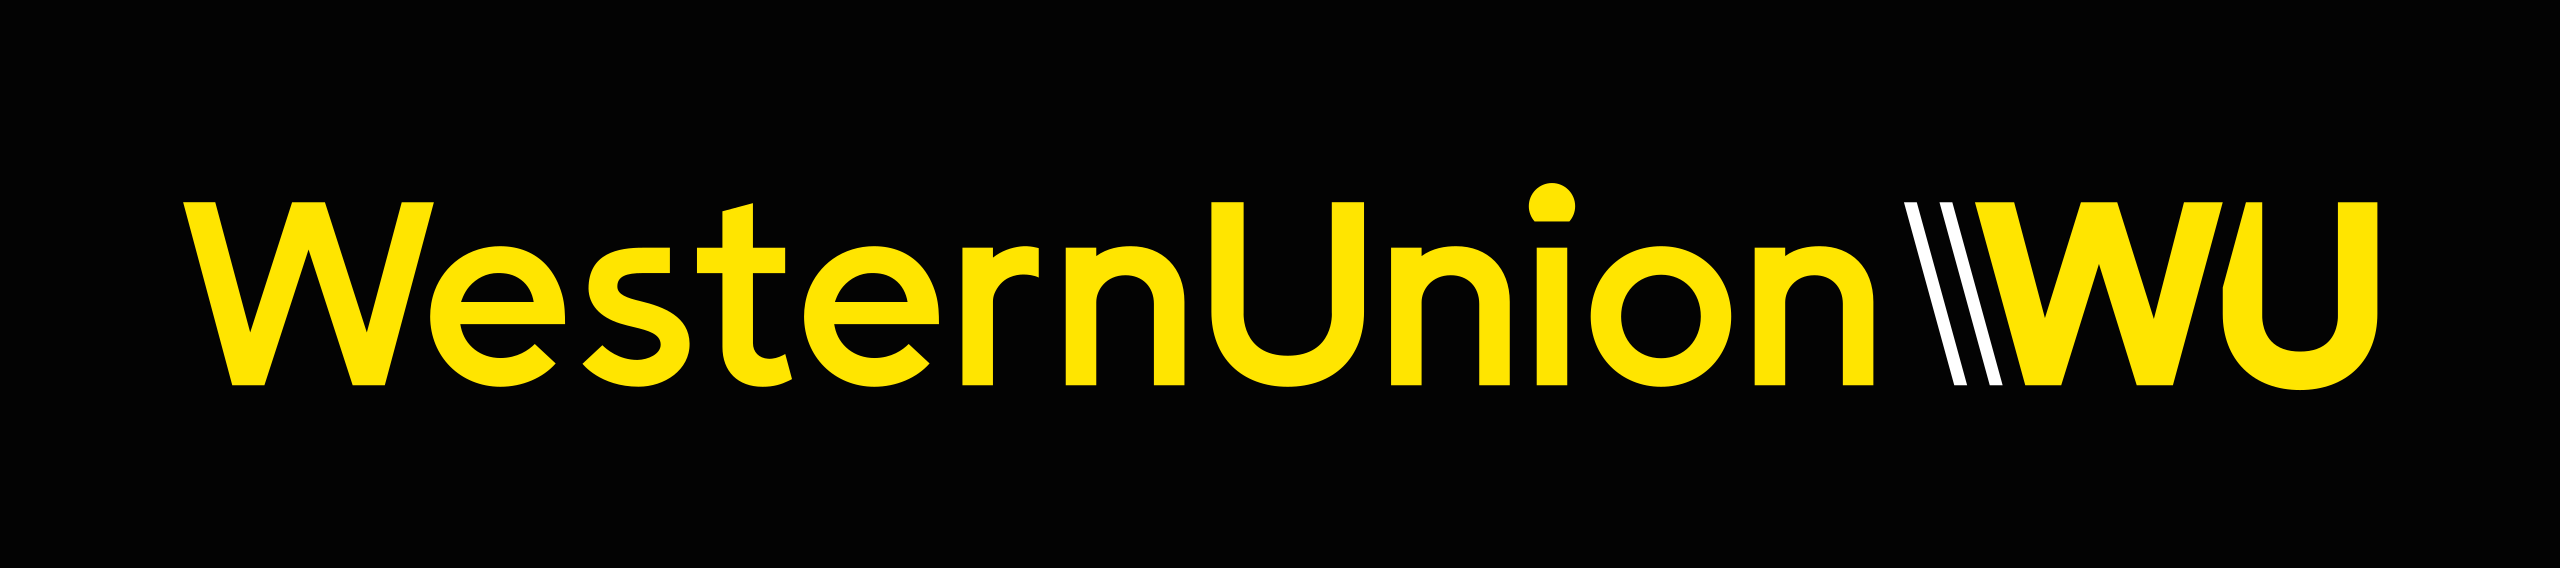 Western_Union_Logo_2019